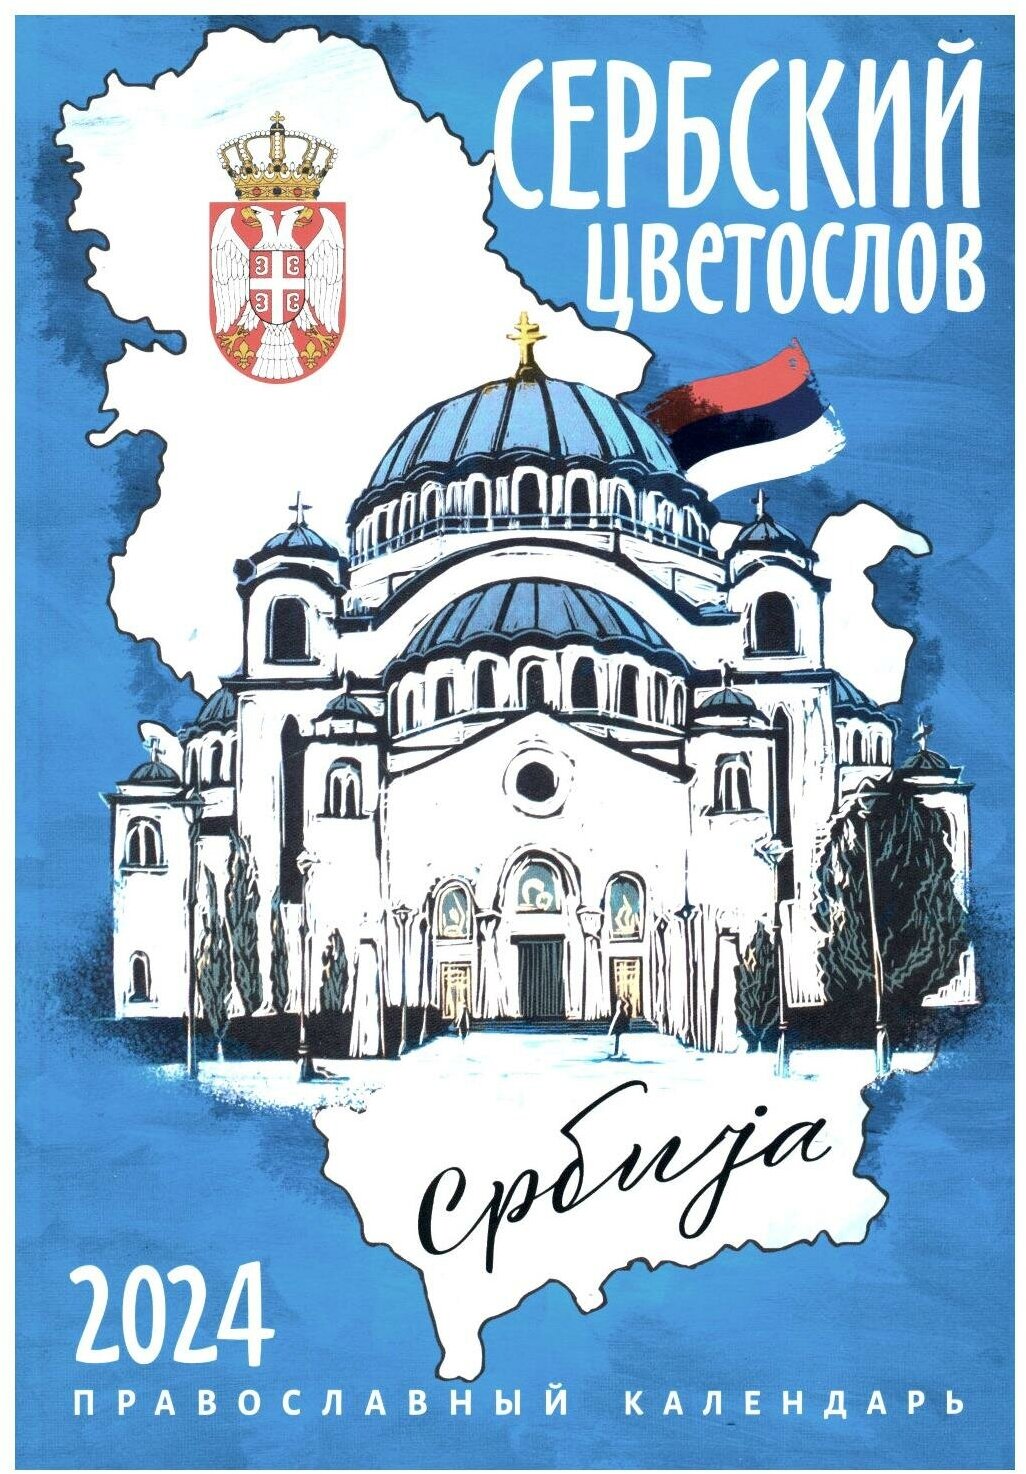 2024 Календарь православный Сербский цветослов - фото №1